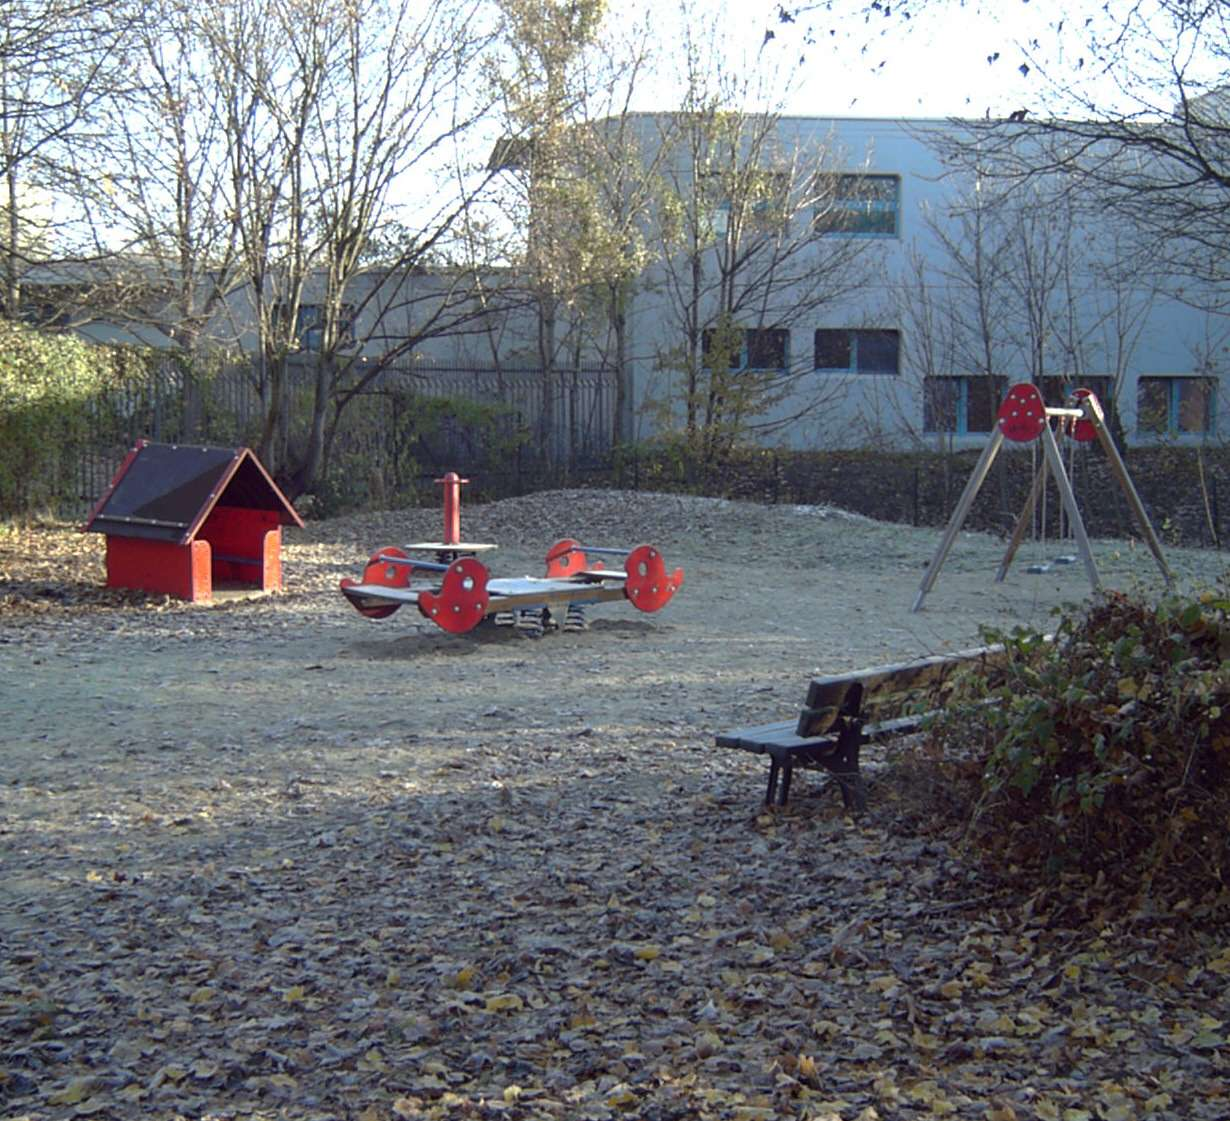 Tempelhofer Damm 161 (Grunackpark) Dieser Spielplatz liegt in der Nähe der Tempelhofer Stadtbibliothek. Von der Ausstattung her ist er für Kleinkinder ausgelegt.